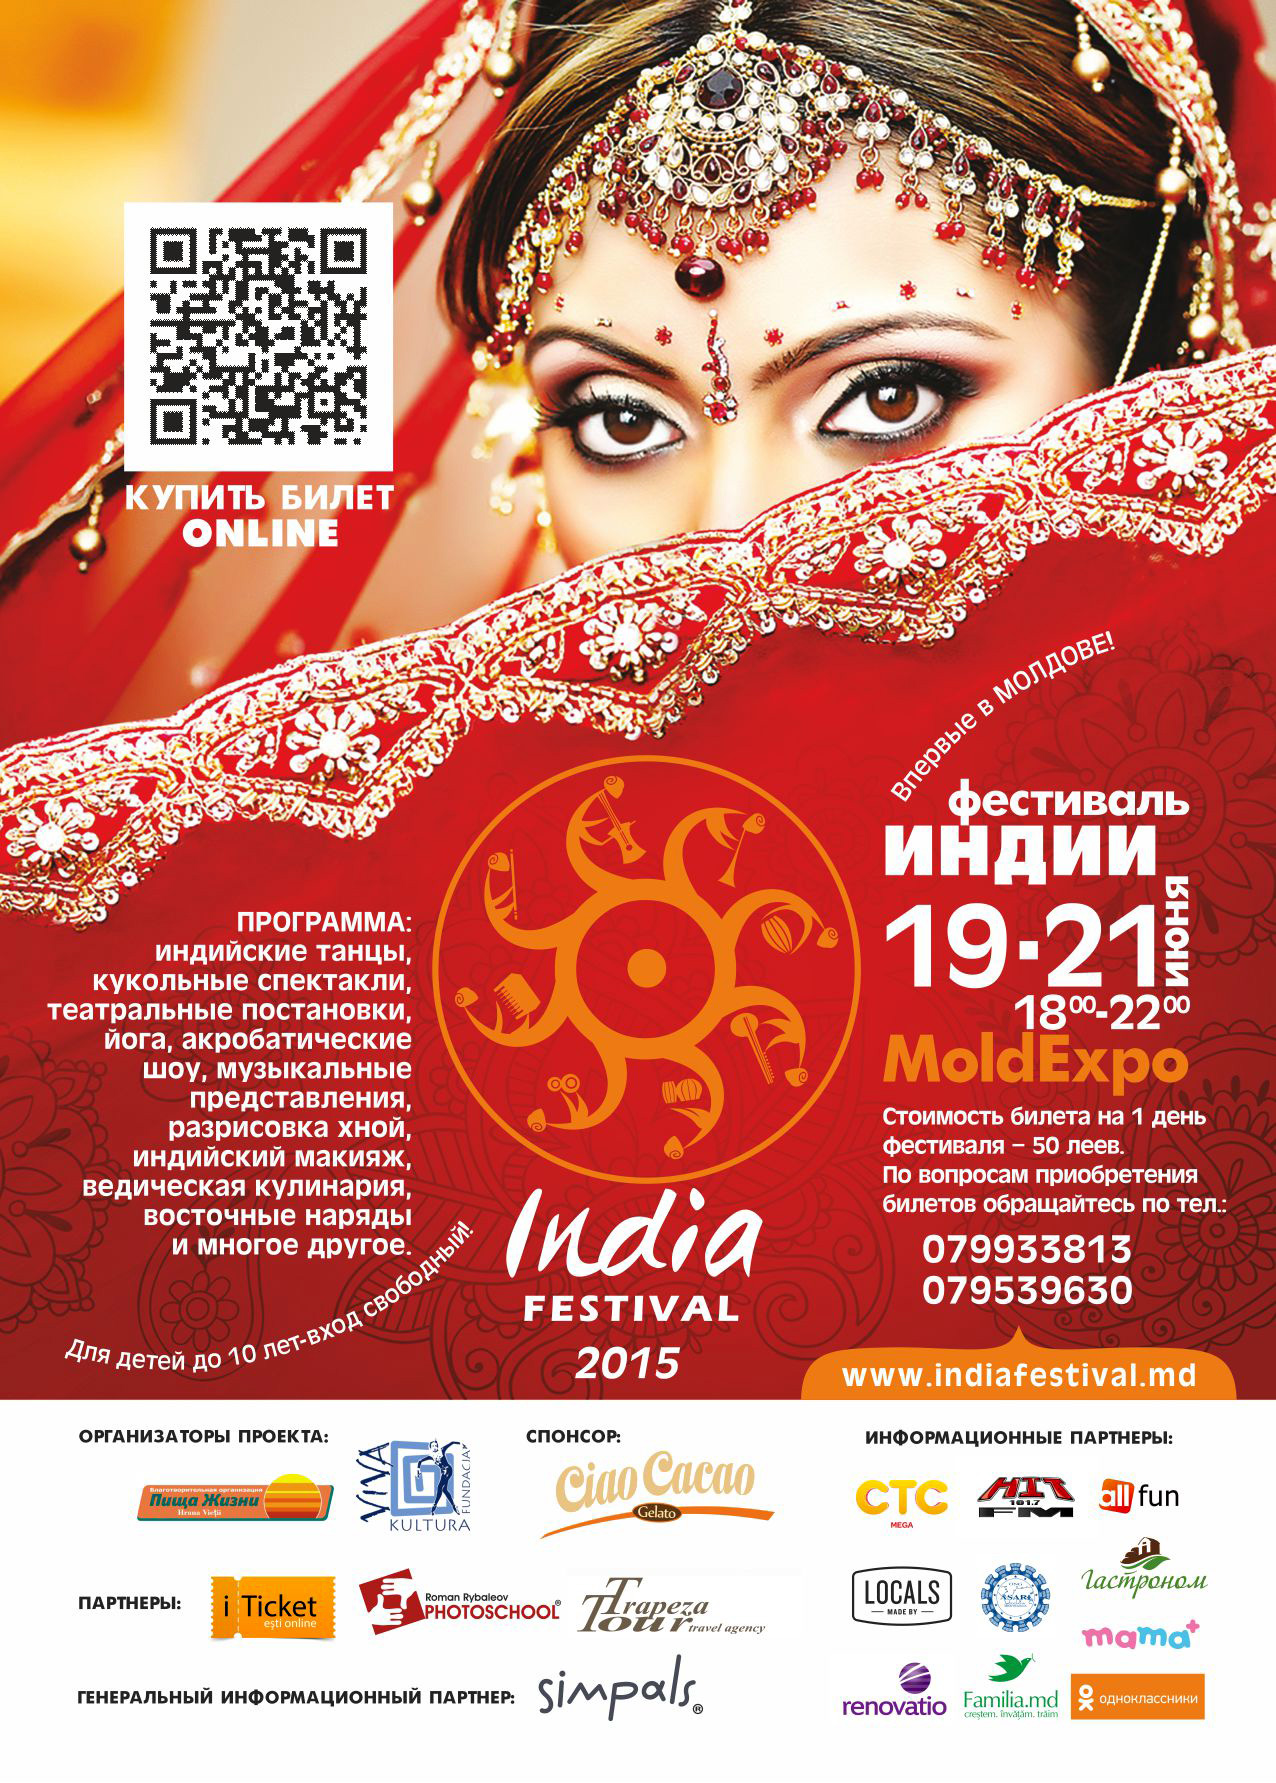 Фестиваль Индии – впервые в Молдове!